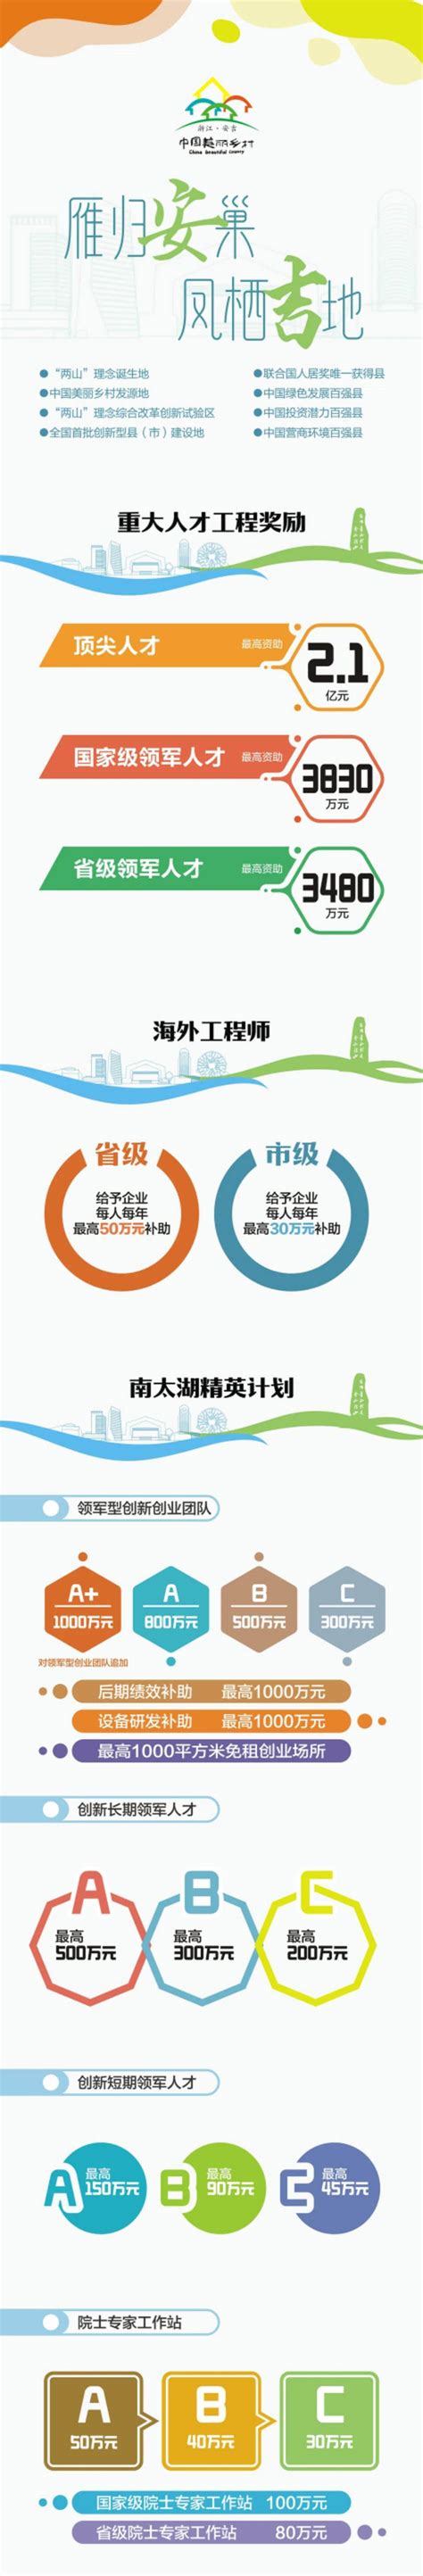 安吉县人民政府 政策图解